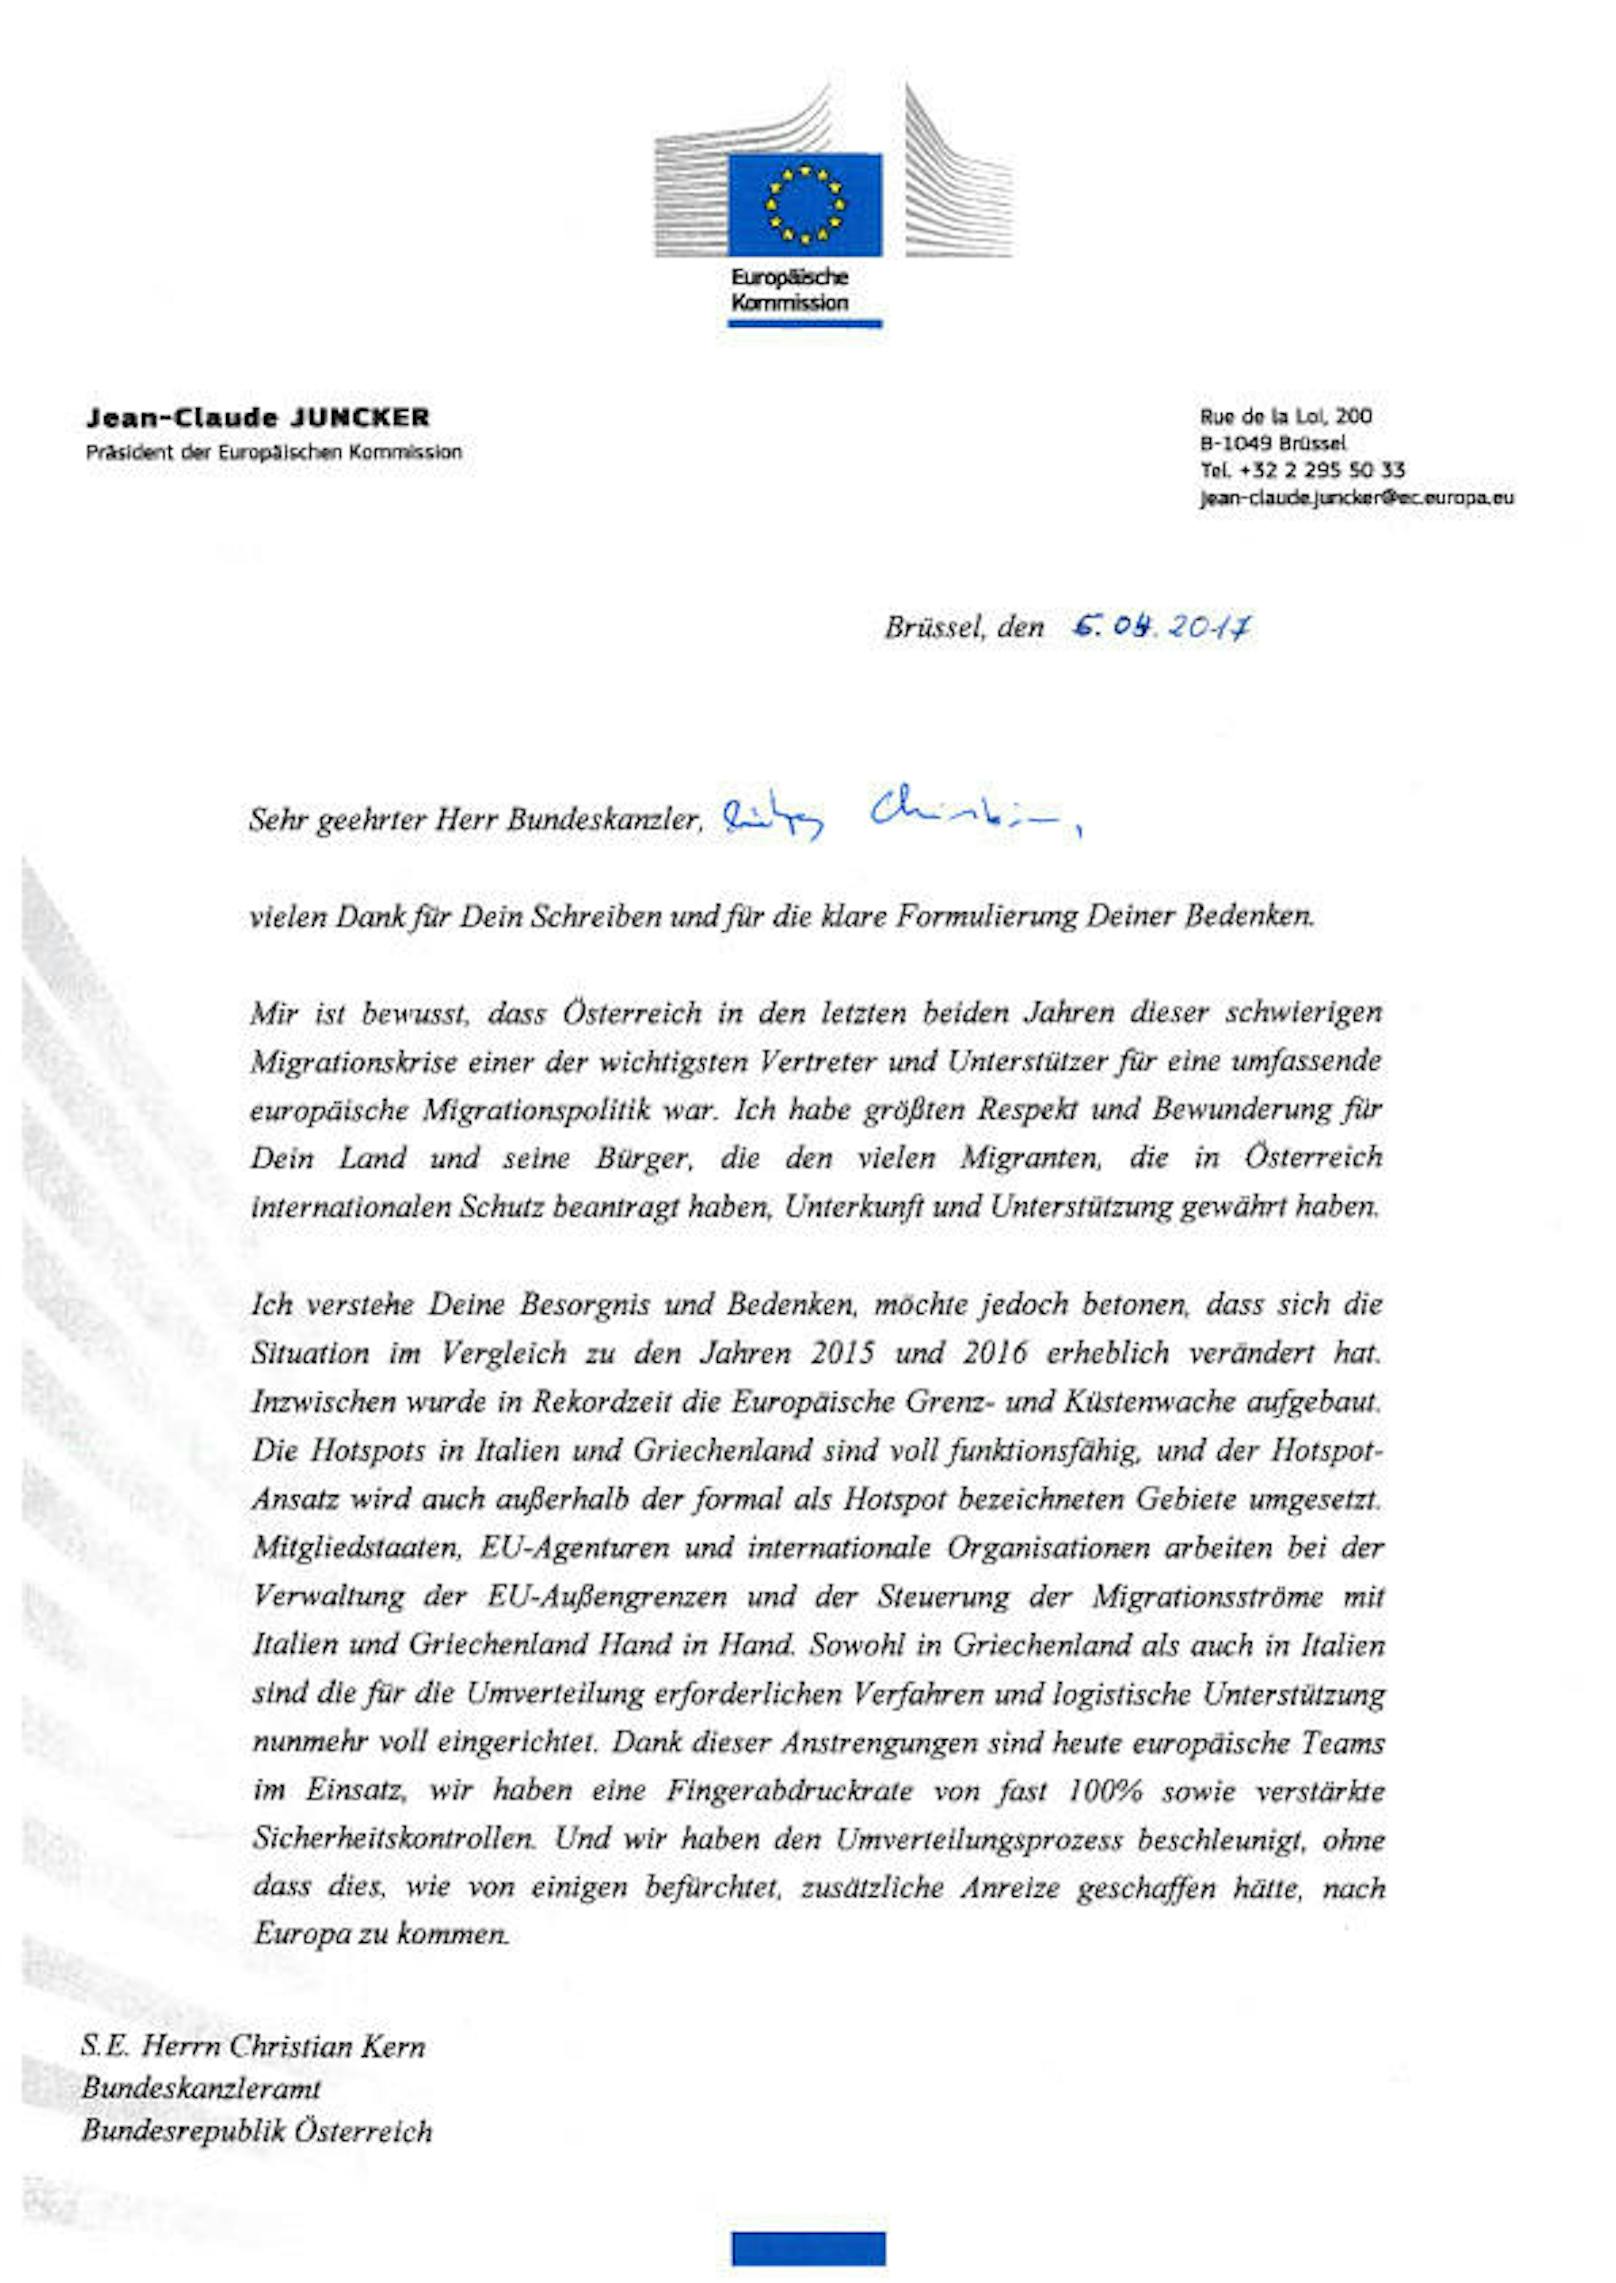 Kanzler Christian Kern hatte per Brief bei der EU um ein erneutes Aussetzen der Umverteilung von Flüchtlingen nach Österreich gebeten